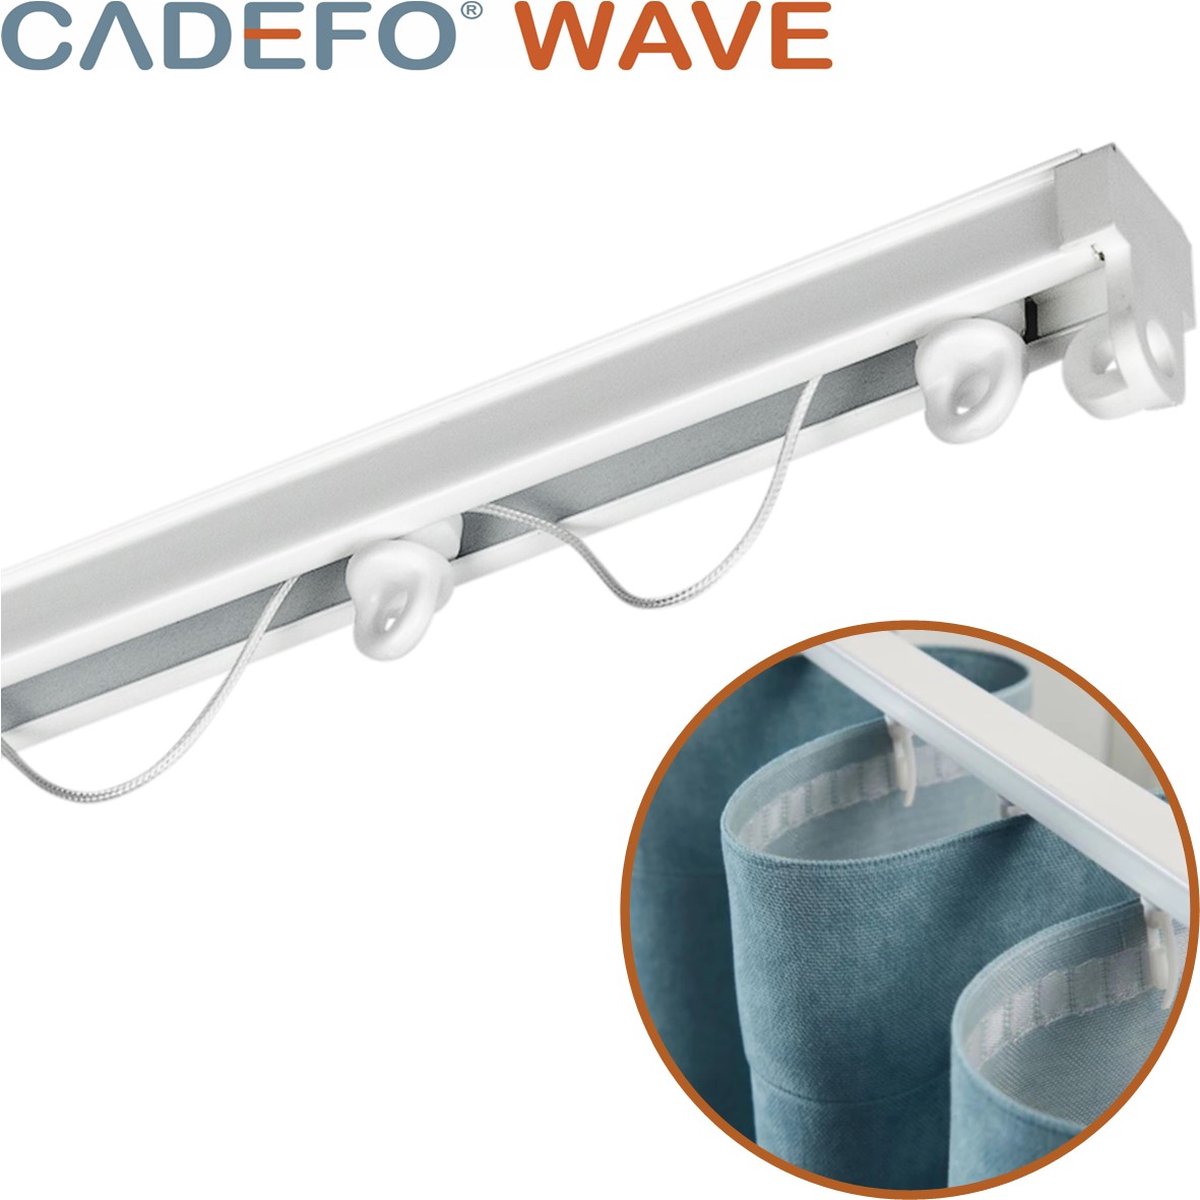 CADEFO WAVE (351 - 400 cm) Gordijnrails - Compleet op maat! - UIT 1 STUK - Leverbaar tot 6 meter - Plafondbevestiging - Lengte 360 cm